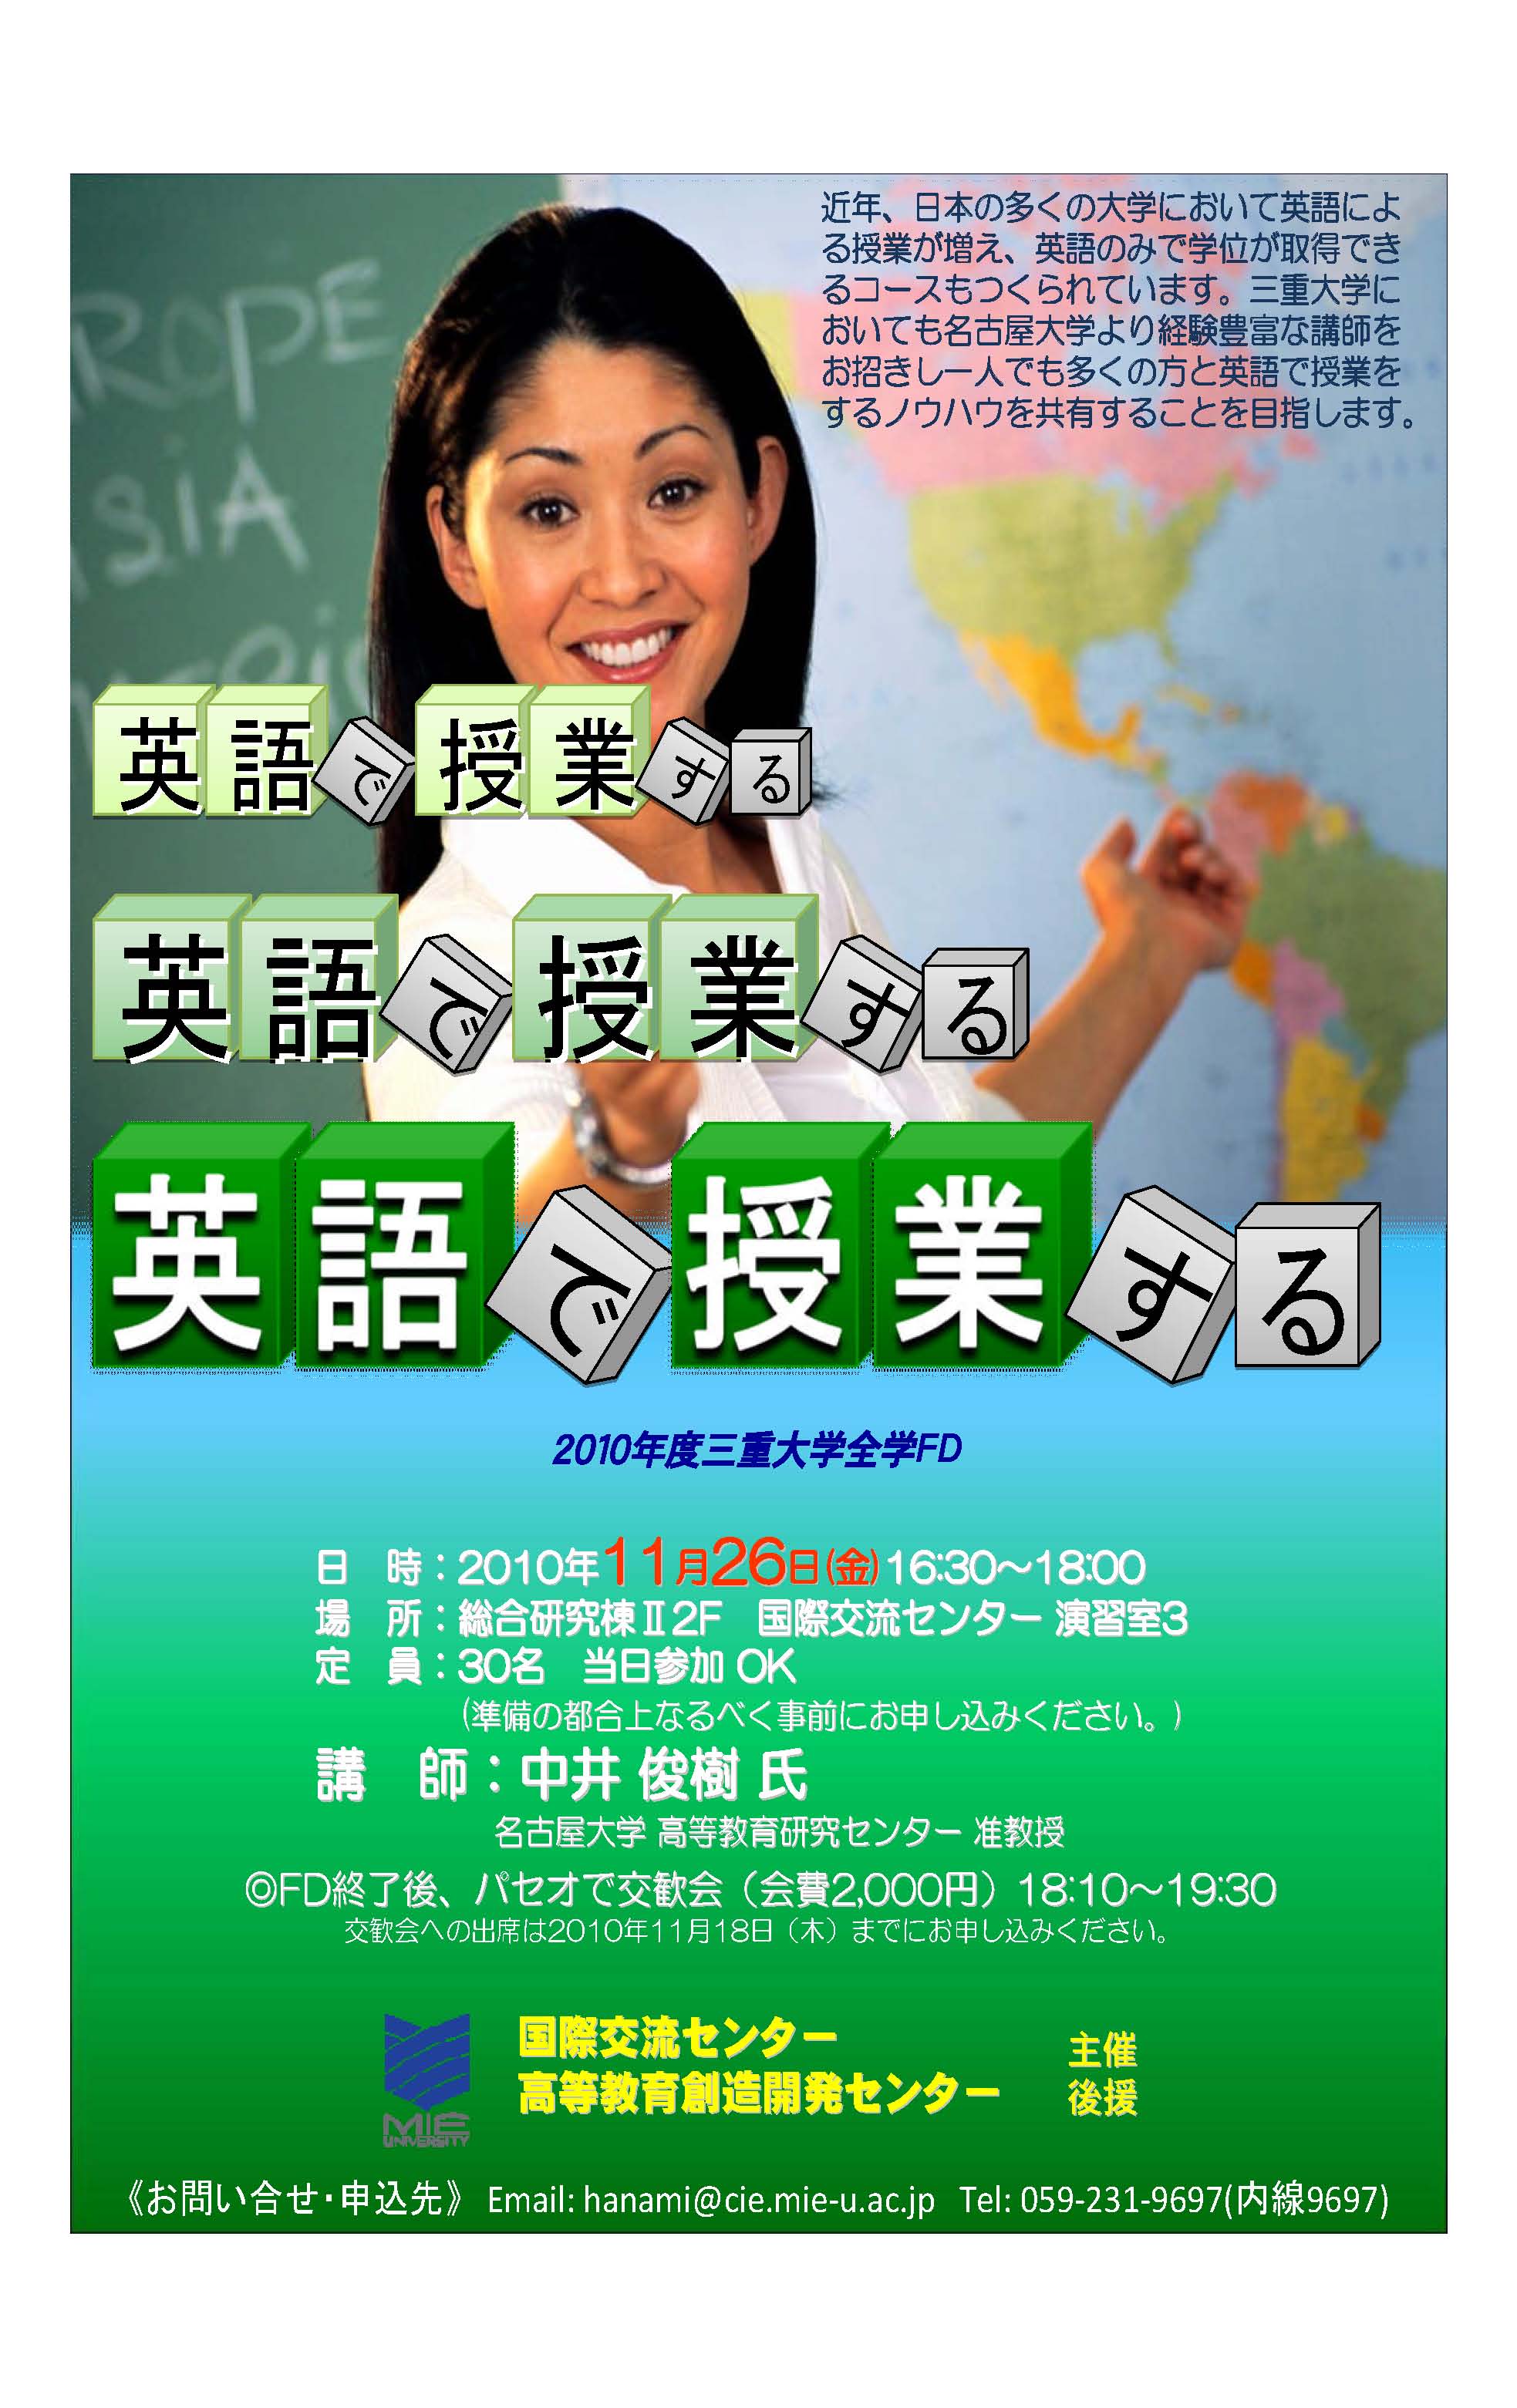 2010年度三重大学全学FD「英語で授業する」ポスター